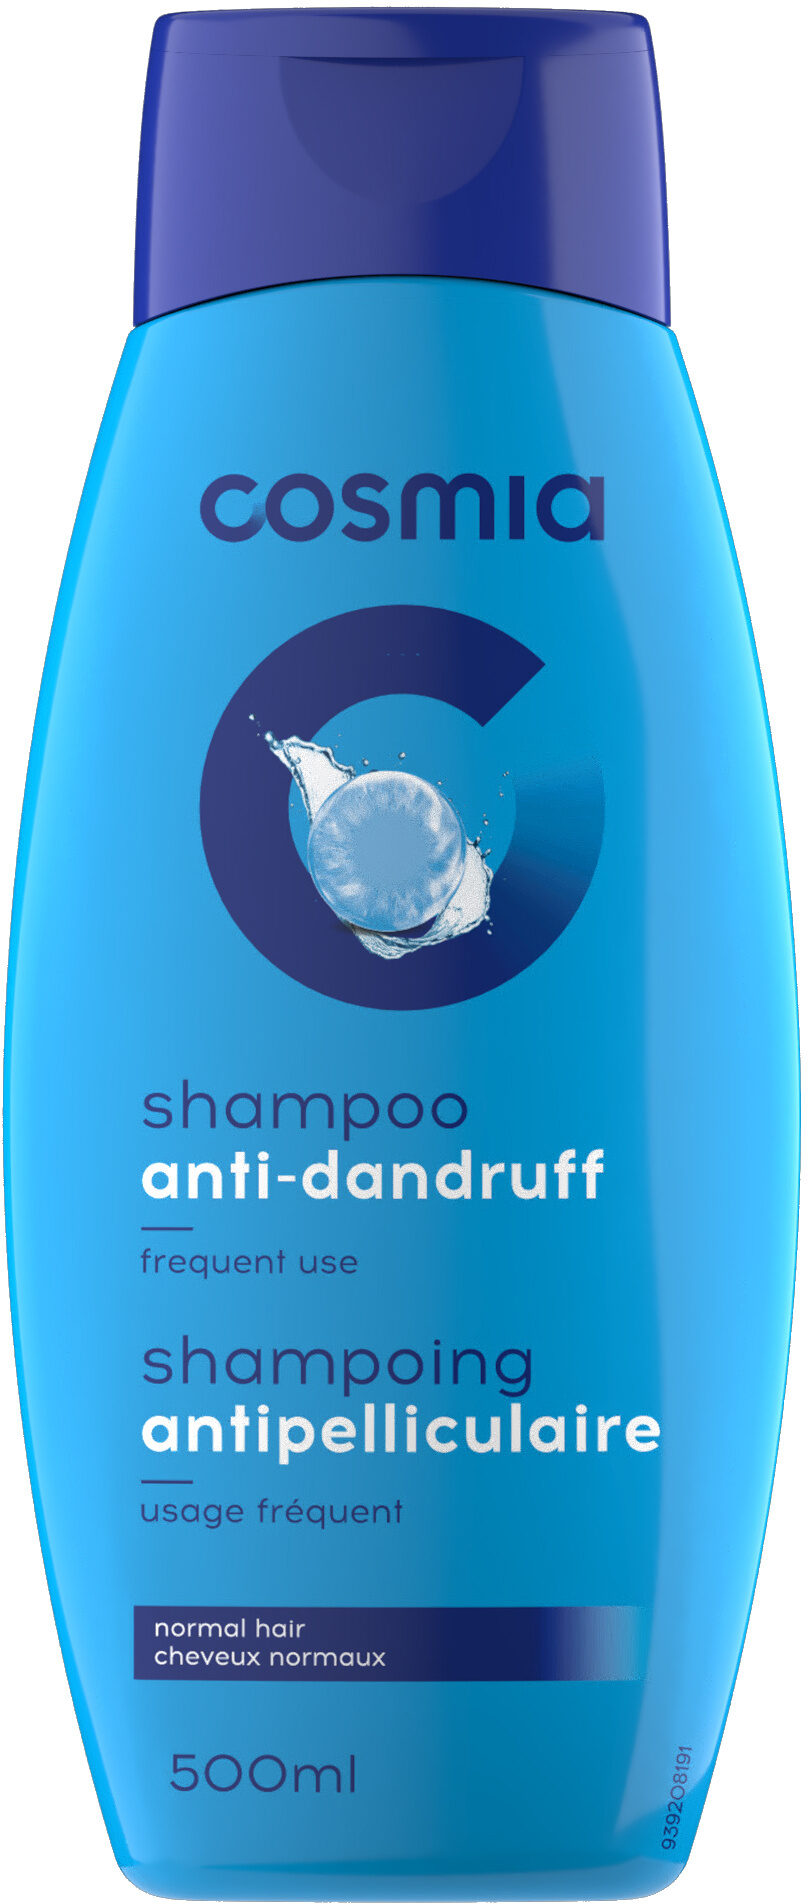 Shampoing antipelliculaire - Produto - fr